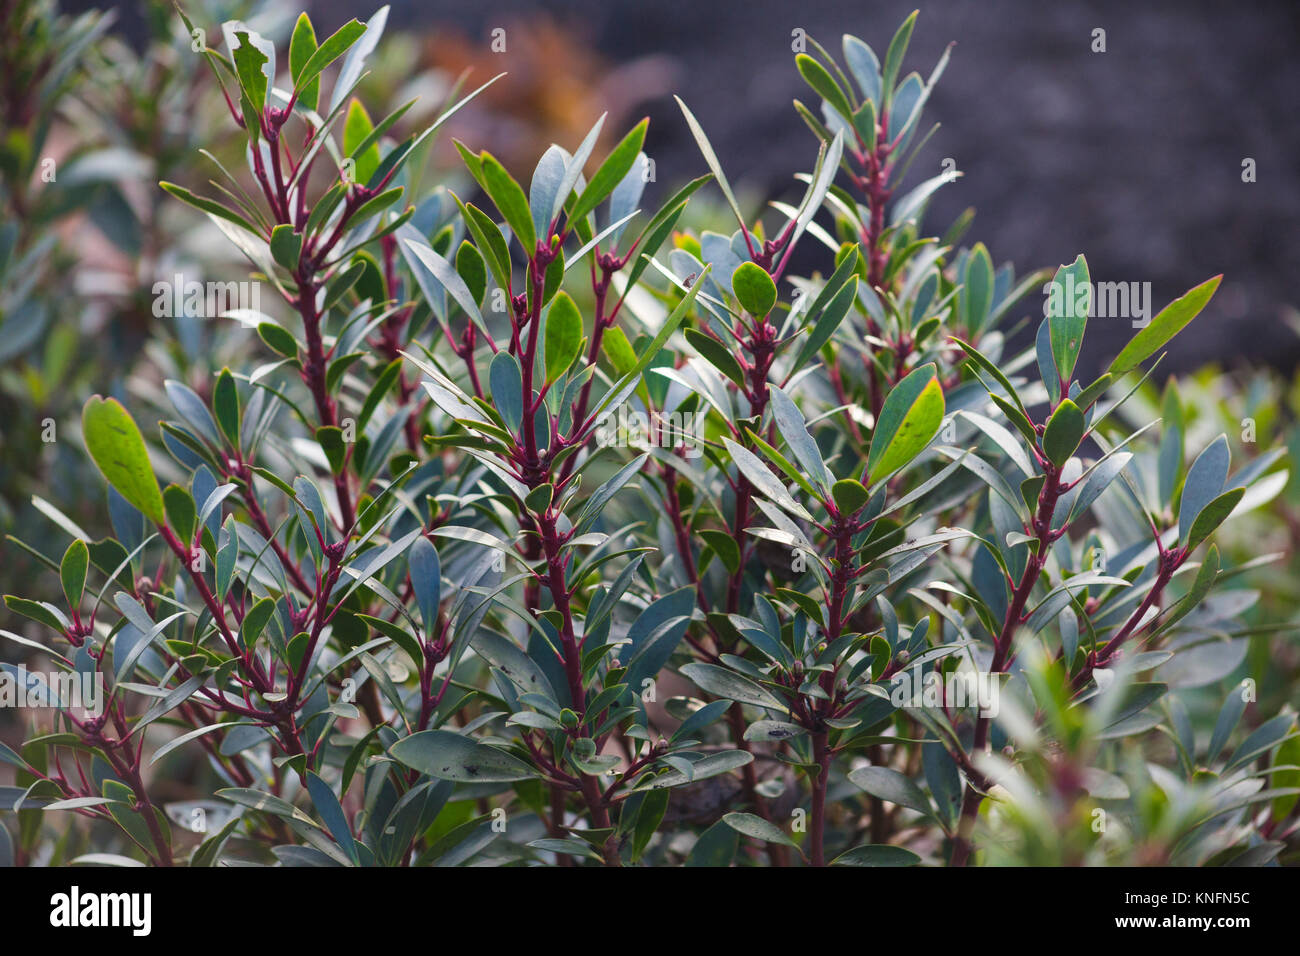 Tasmannia lanceolata Stock Photo